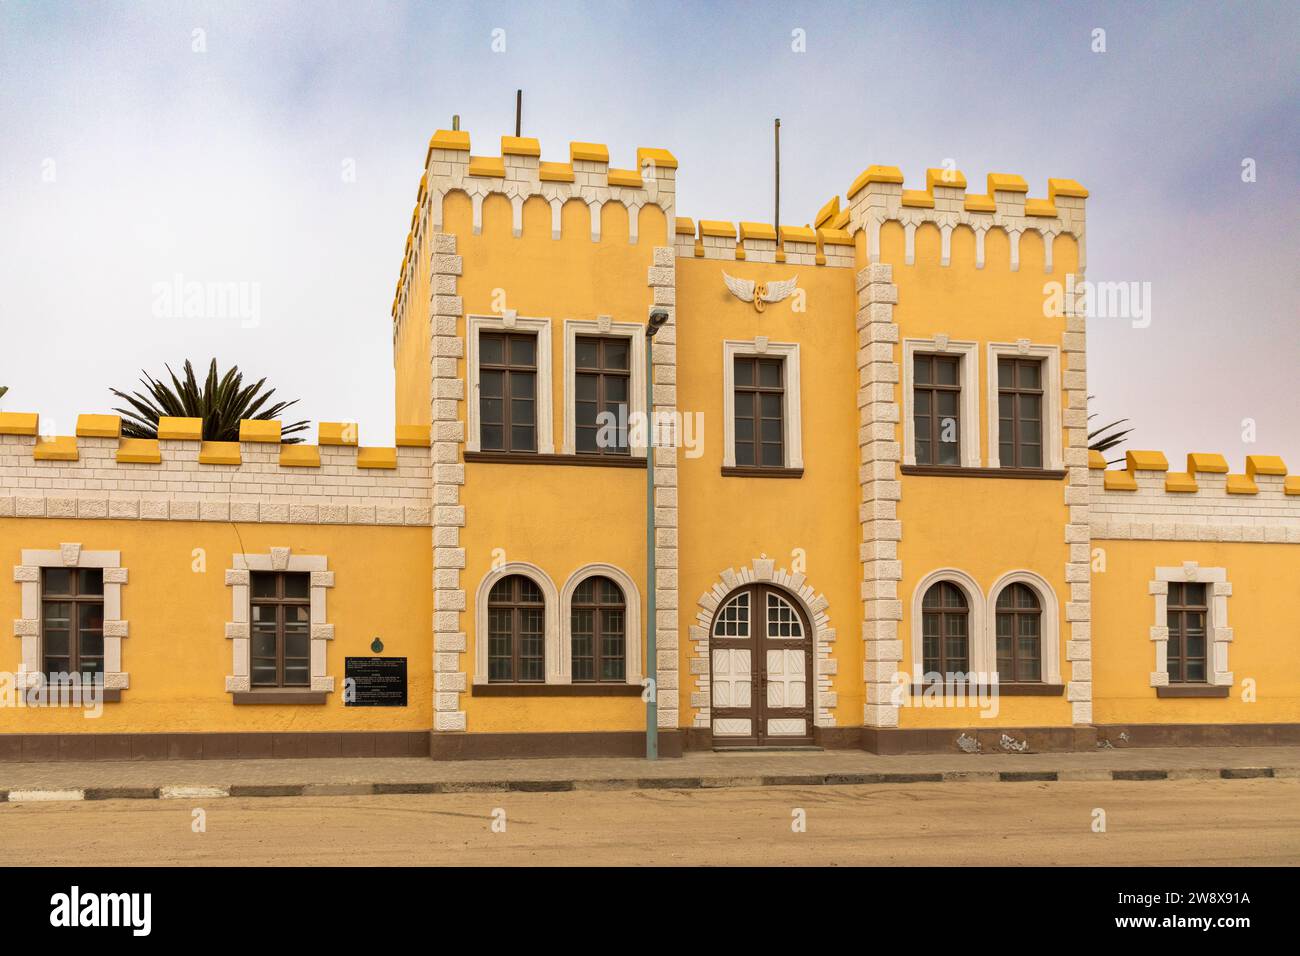 Ein typisch deutsches Gebäude im Kolonialstil befindet sich in der Stadt Swakopmund, Namibia. Die Kaserne wurde 1905 als militärbarr erbaut Stockfoto